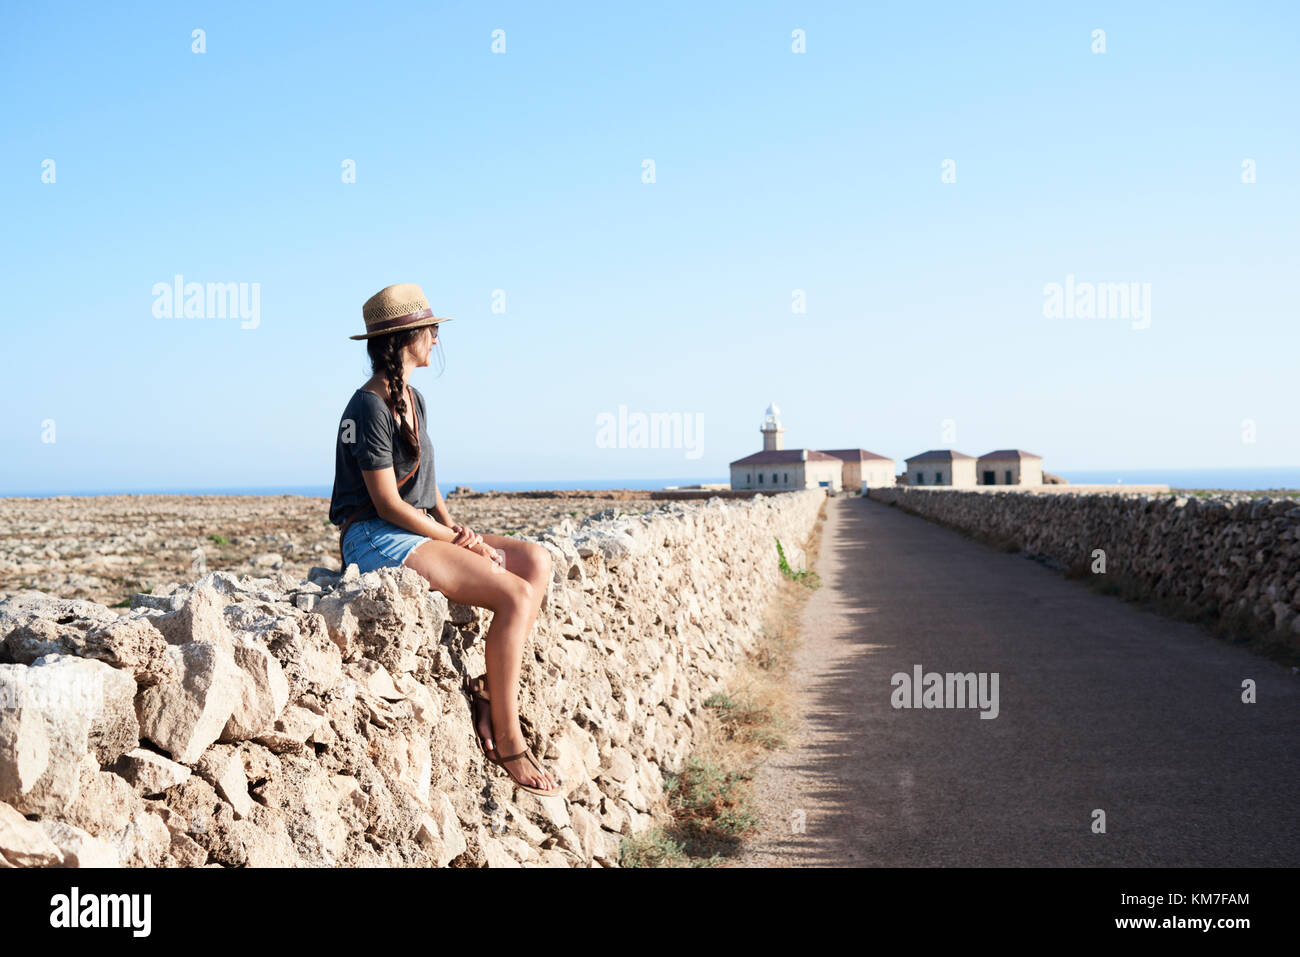 Menorca, Espagne, solo traveler assis dans un mur portant un chapeau explorateur dans un vide, d'un phare situé dans l'île de Minorque, solo traveler Banque D'Images